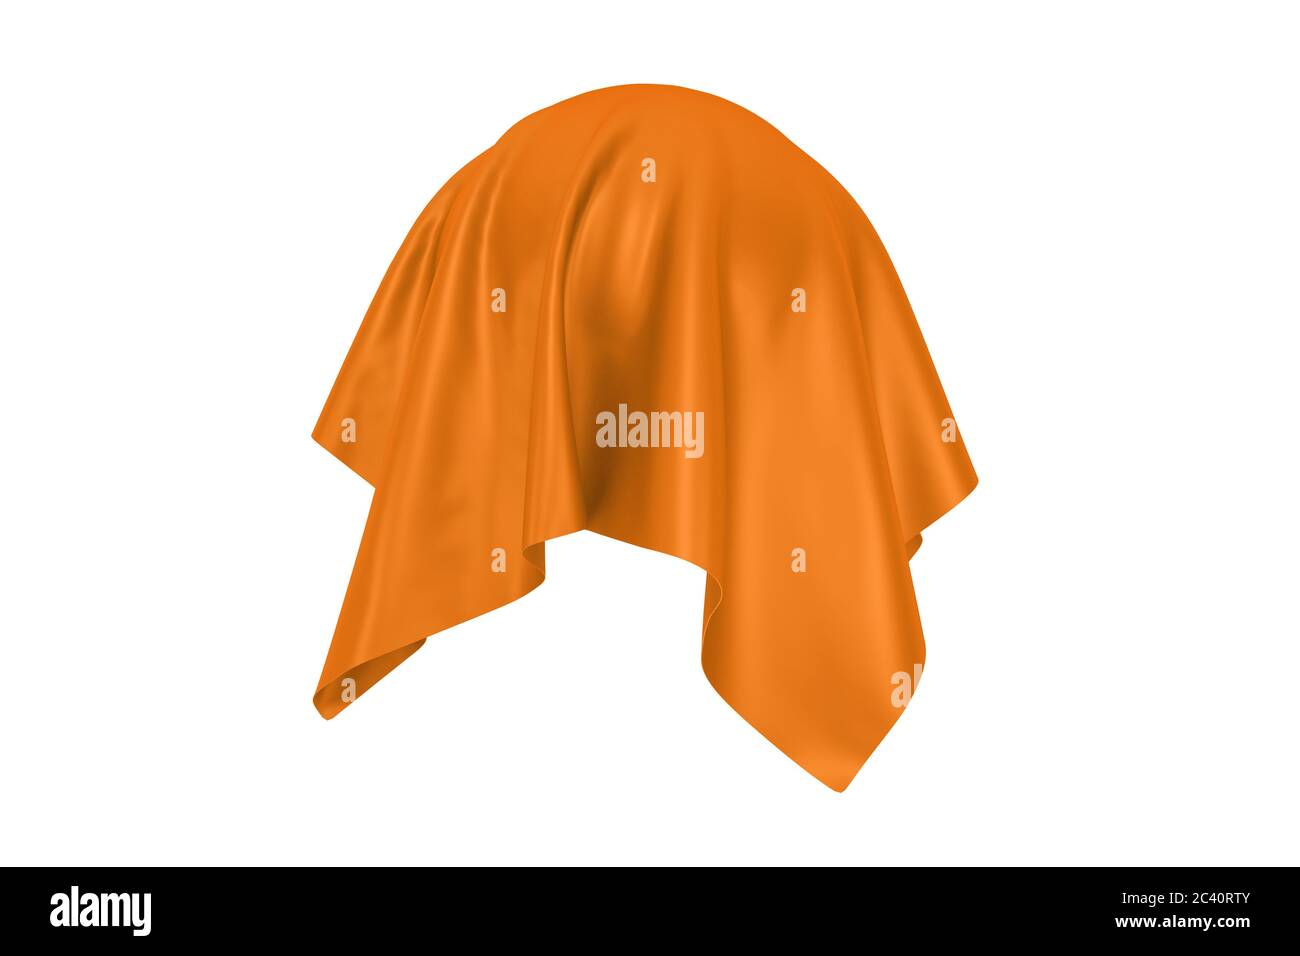 Überraschungs-, Preis- oder Preiskonzept. Wimmelbild mit orangefarbenem Seidenstoff auf weißem Hintergrund bedeckt. 3d-Rendering Stockfoto